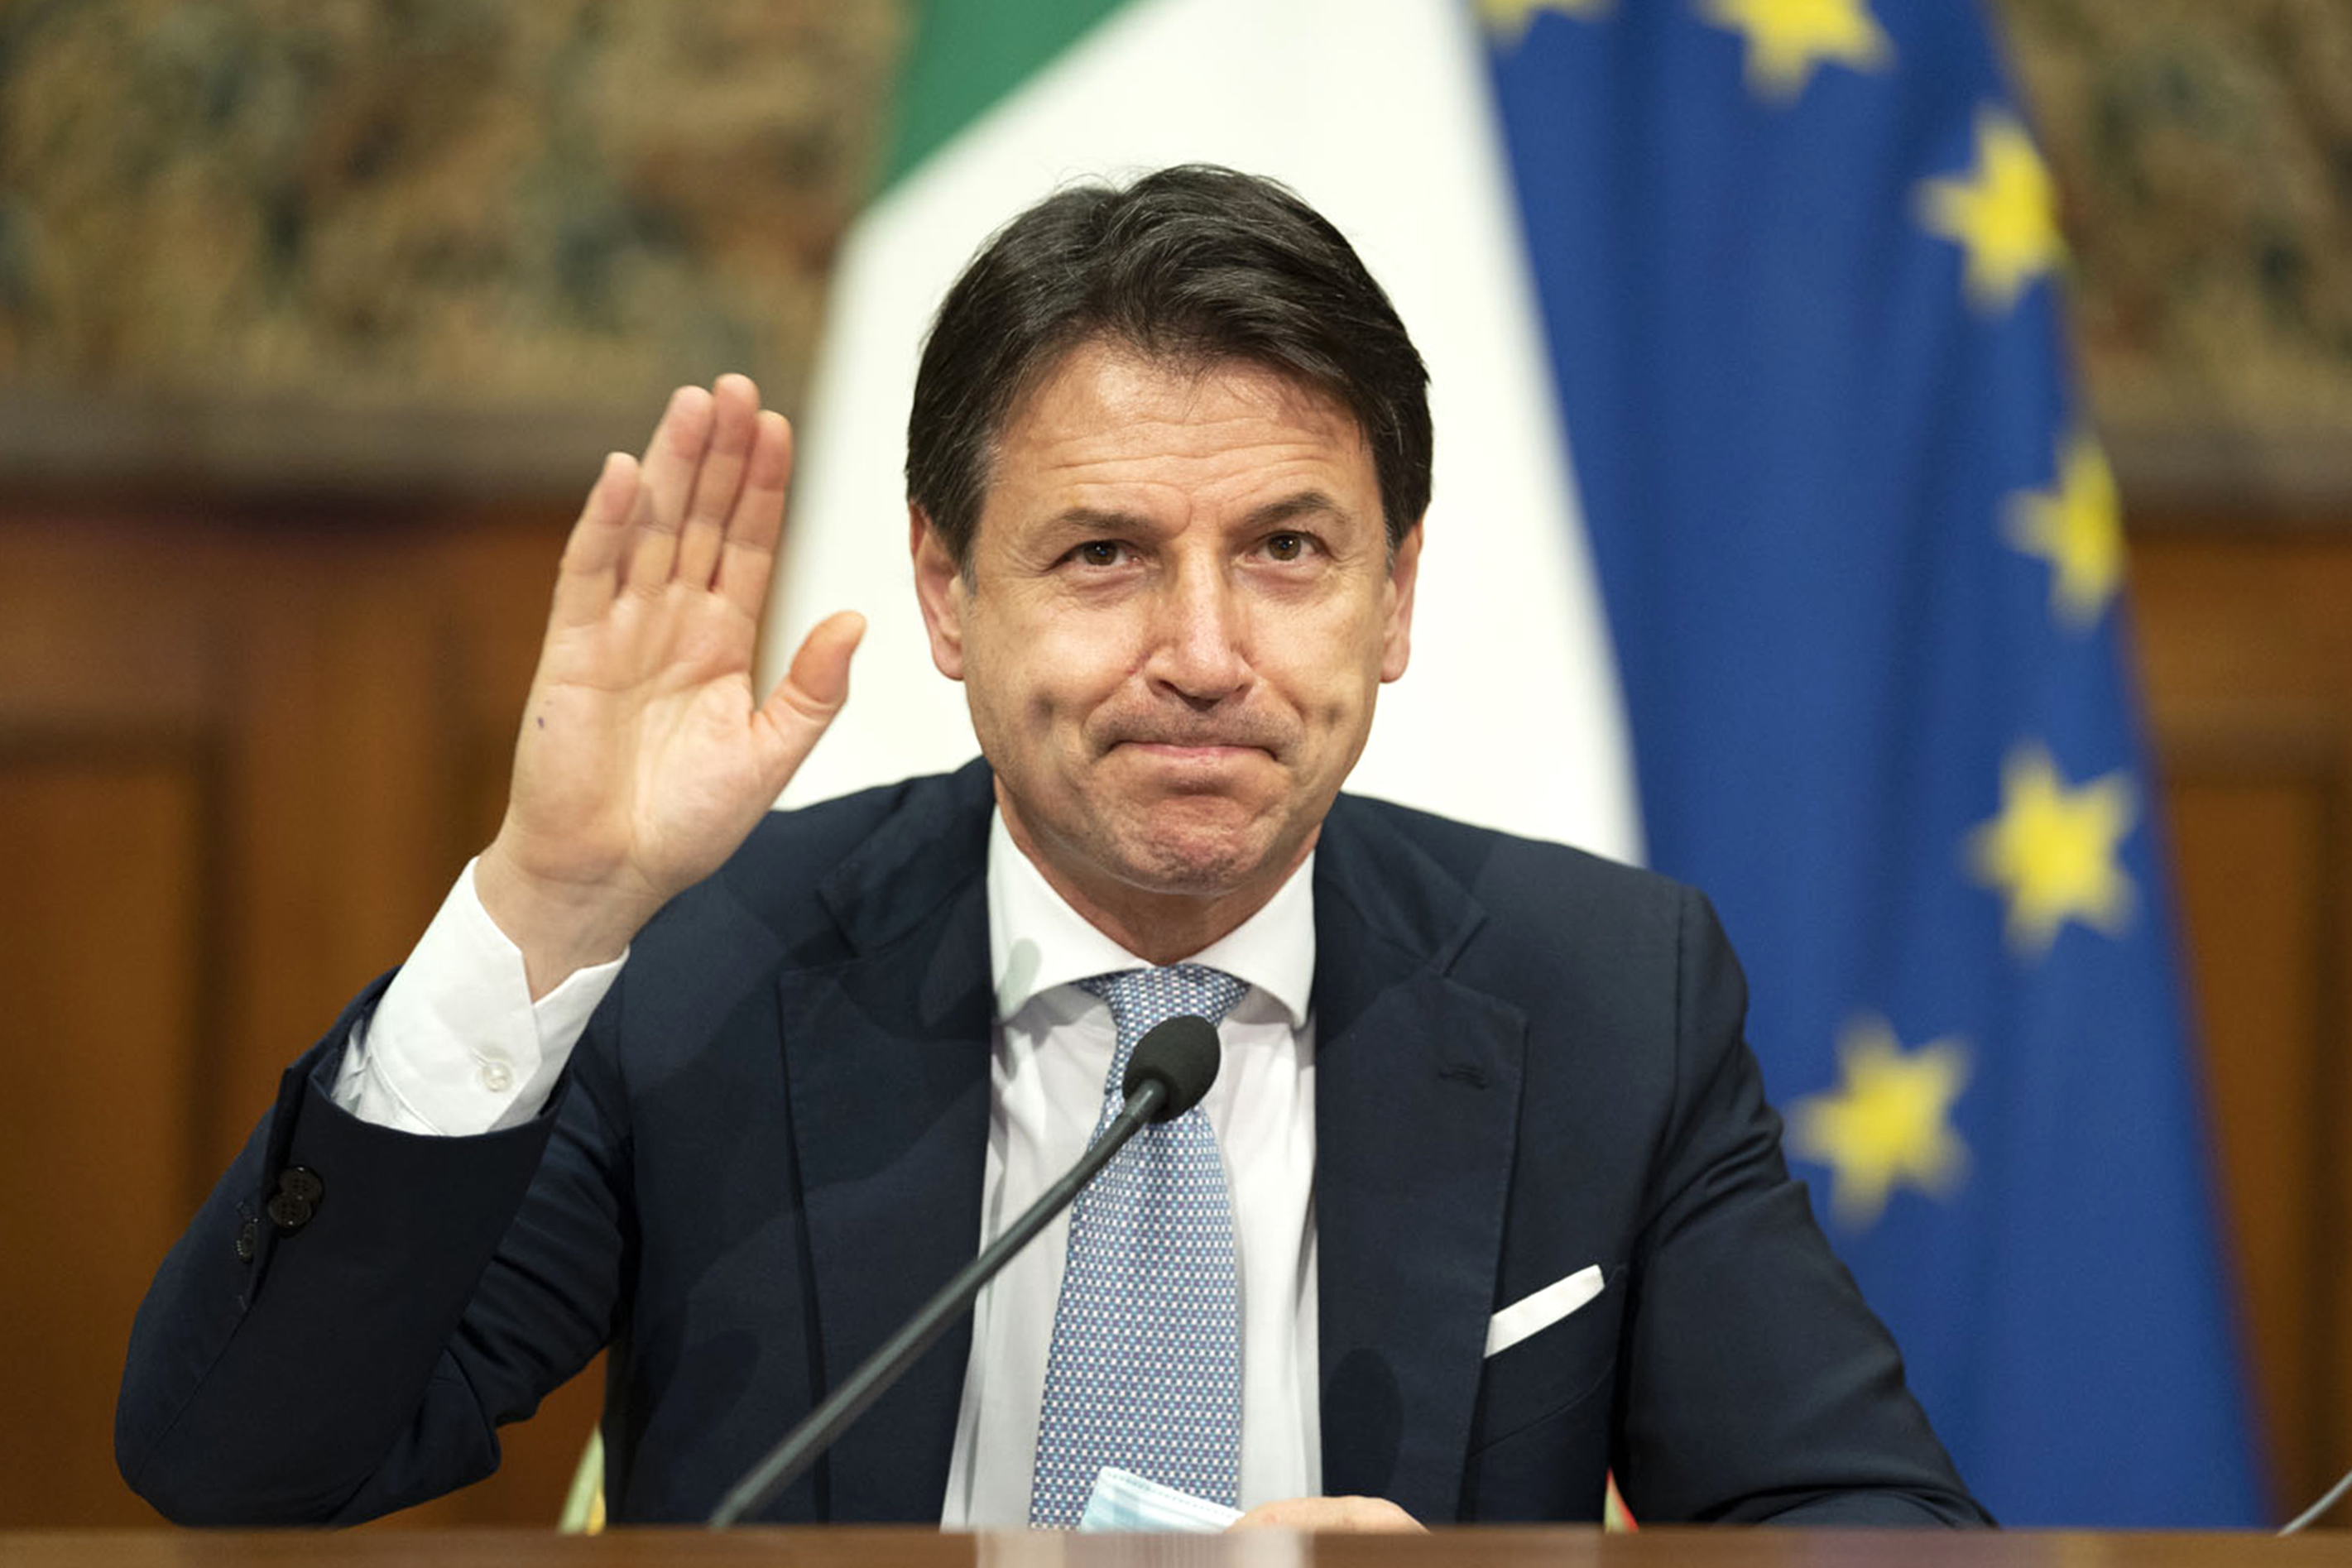 Mélyül a politikai válság Olaszországban, lemondott Giuseppe Conte